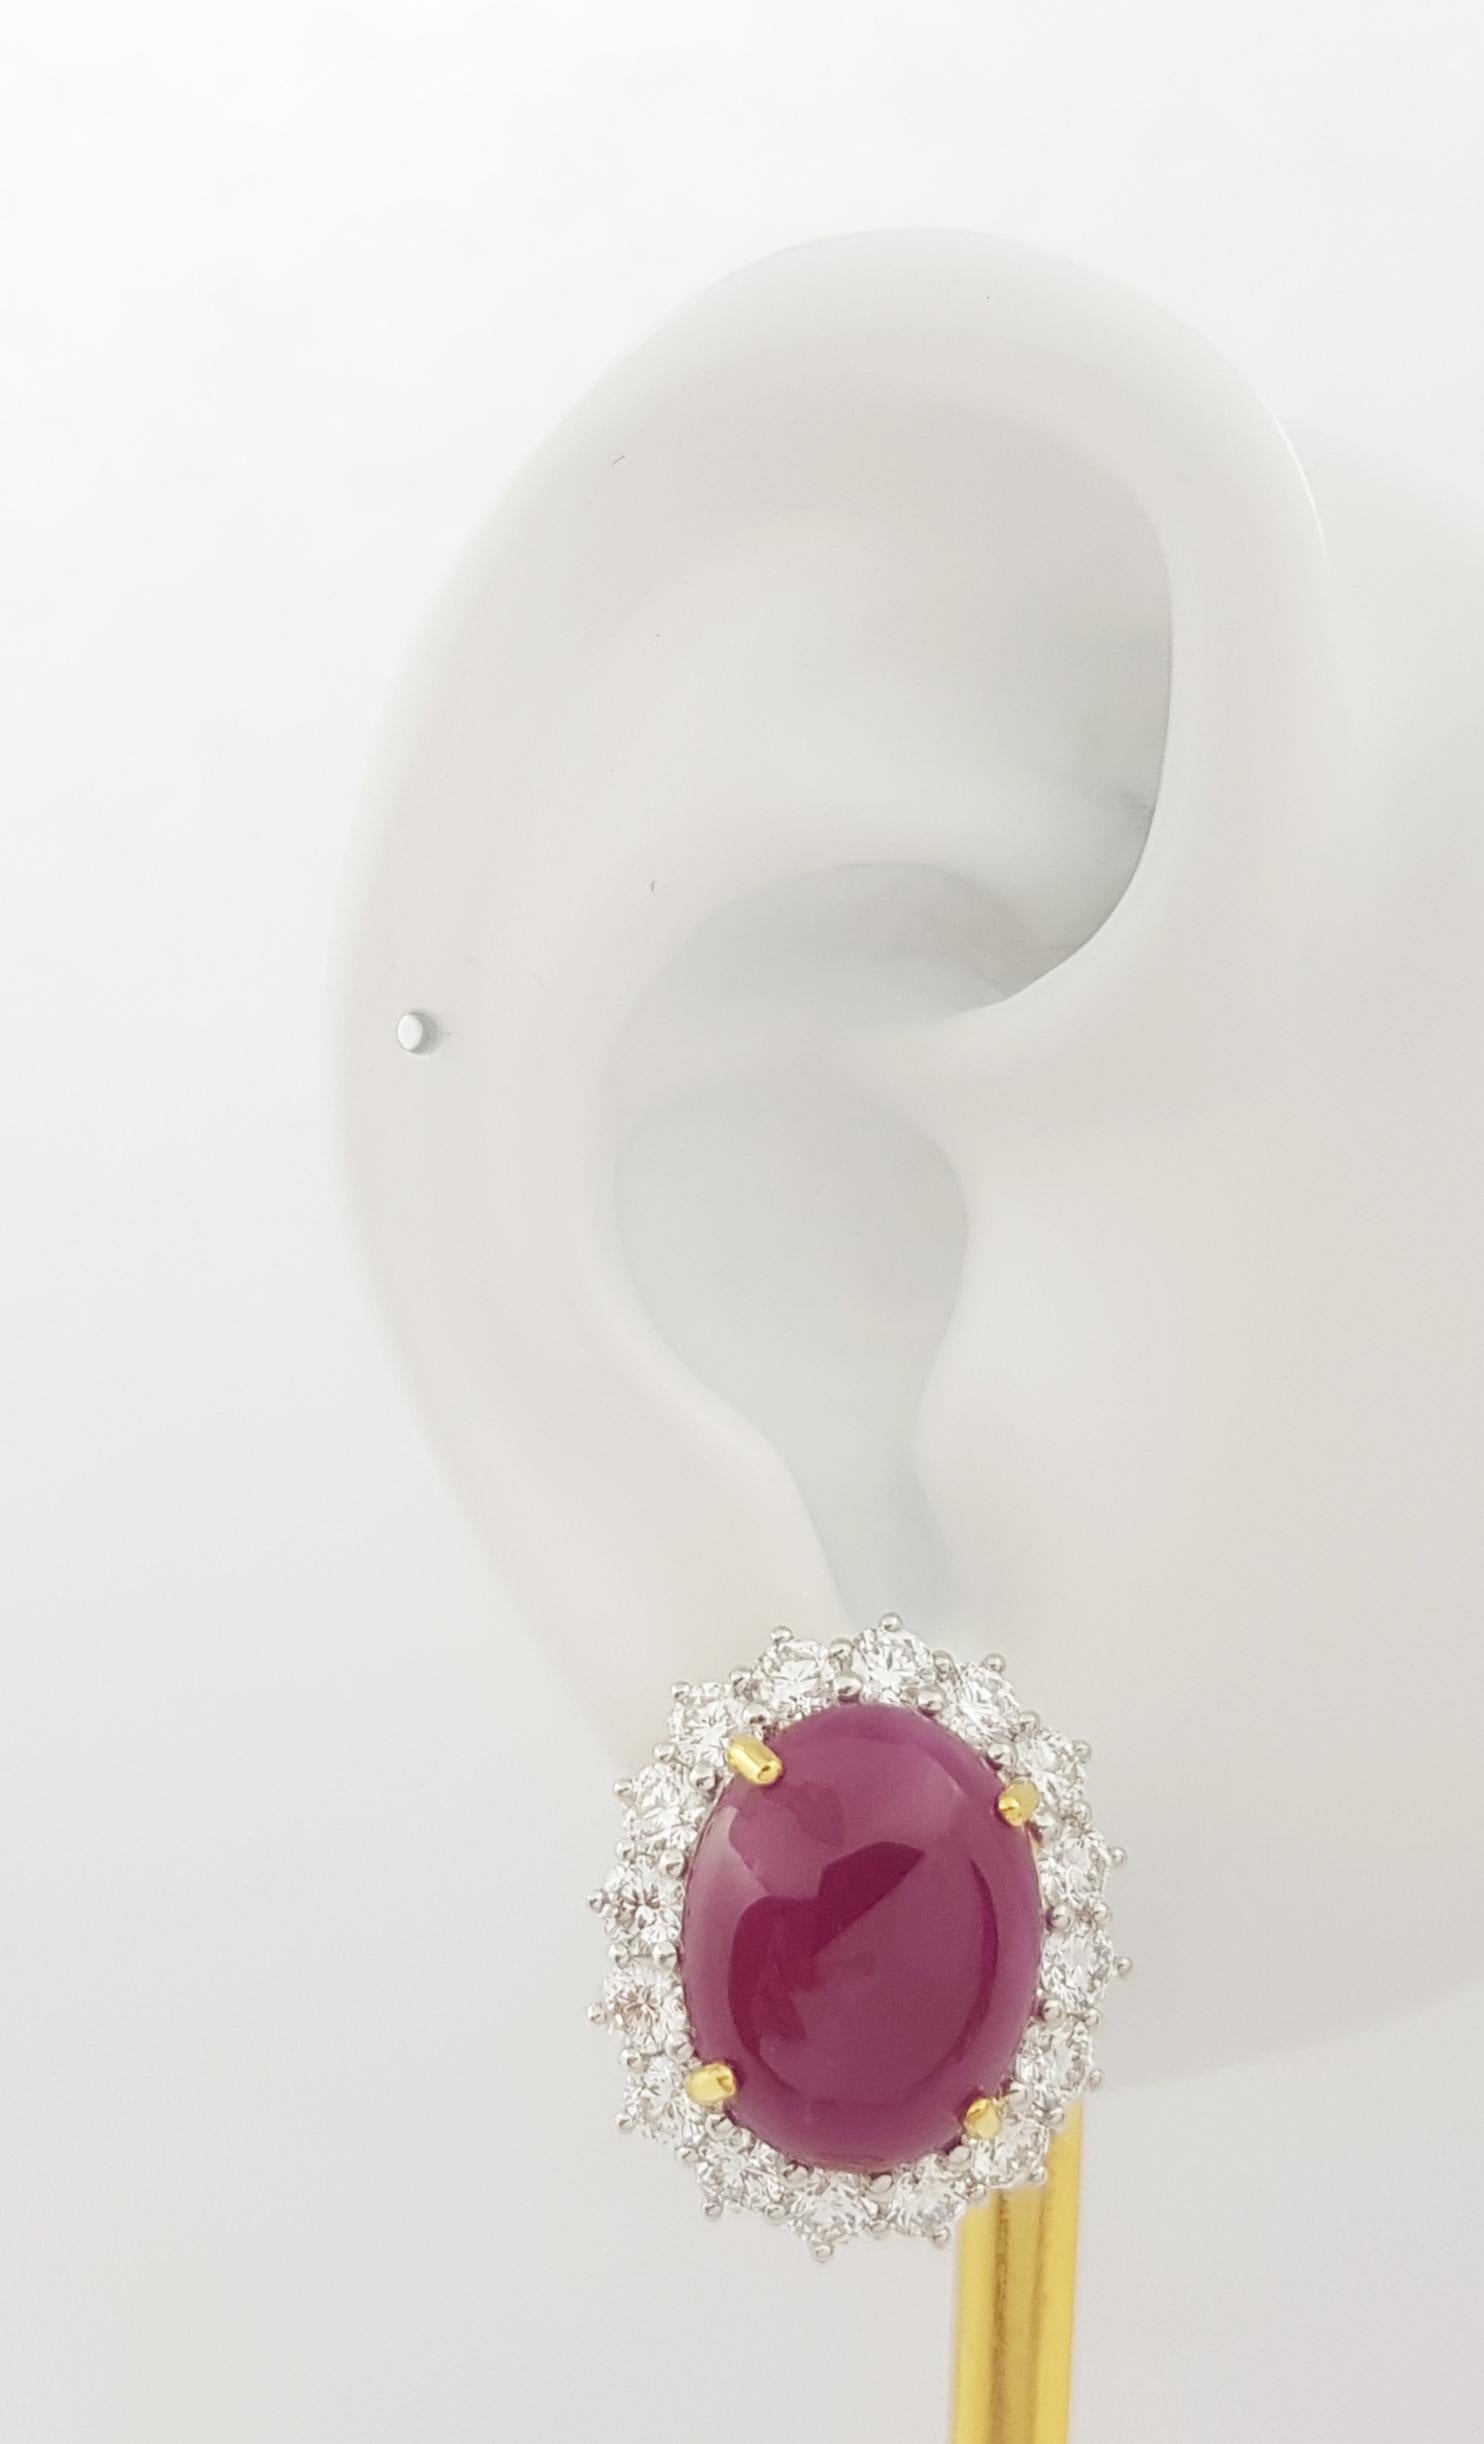 Cabochon Rubin 16,30 Karat mit Diamant 3,76 Karat Ohrringe in 18K Gelb/Weißgold Fassung

Breite: 1.8 cm 
Länge: 2.1 cm
Gesamtgewicht: 15,93 Gramm

